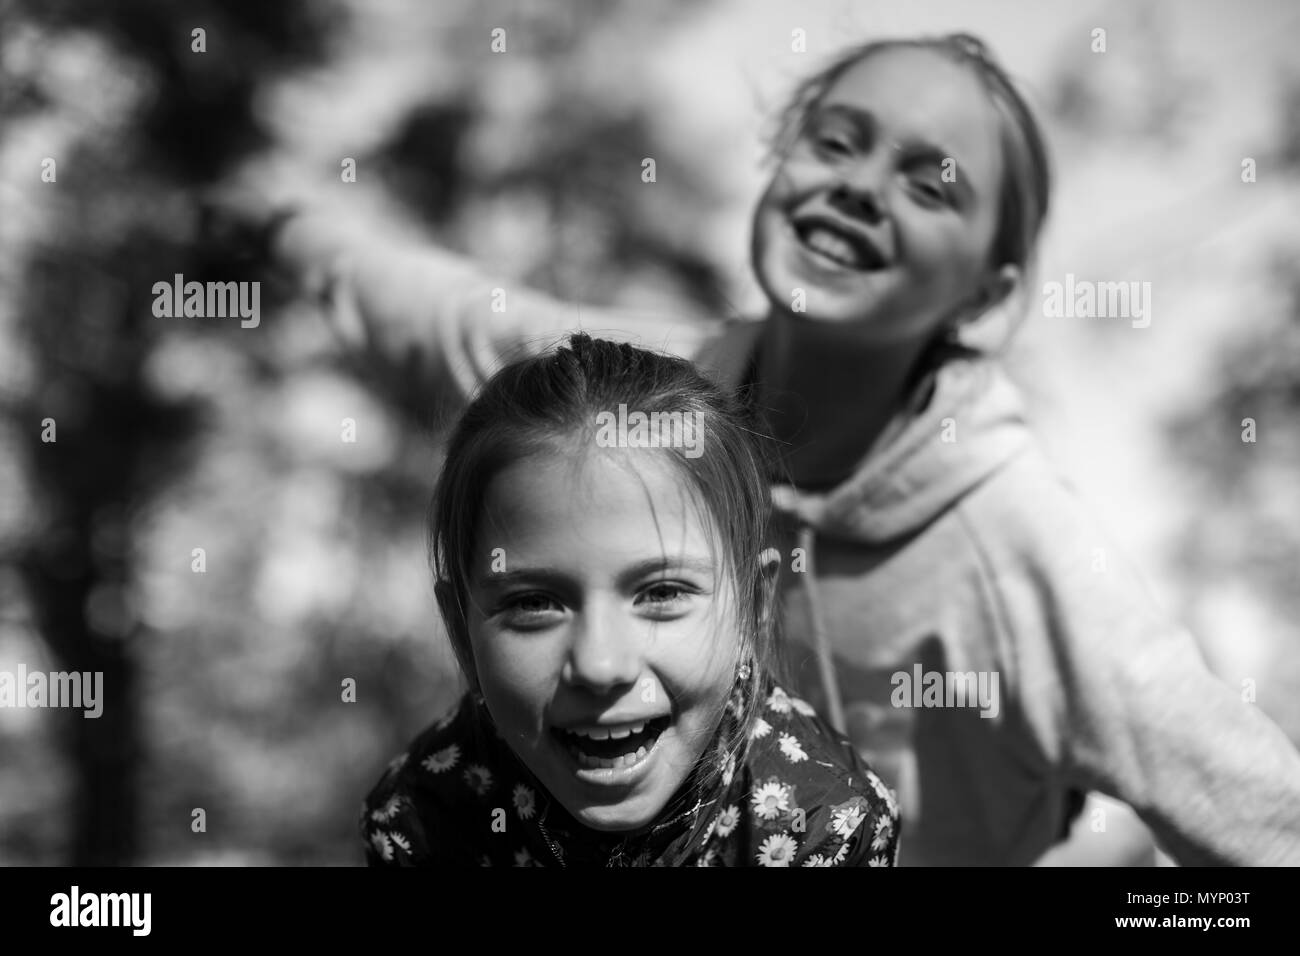 Deux filles soeurs ou amies s'amuser en plein air. Noir et blanc. Banque D'Images